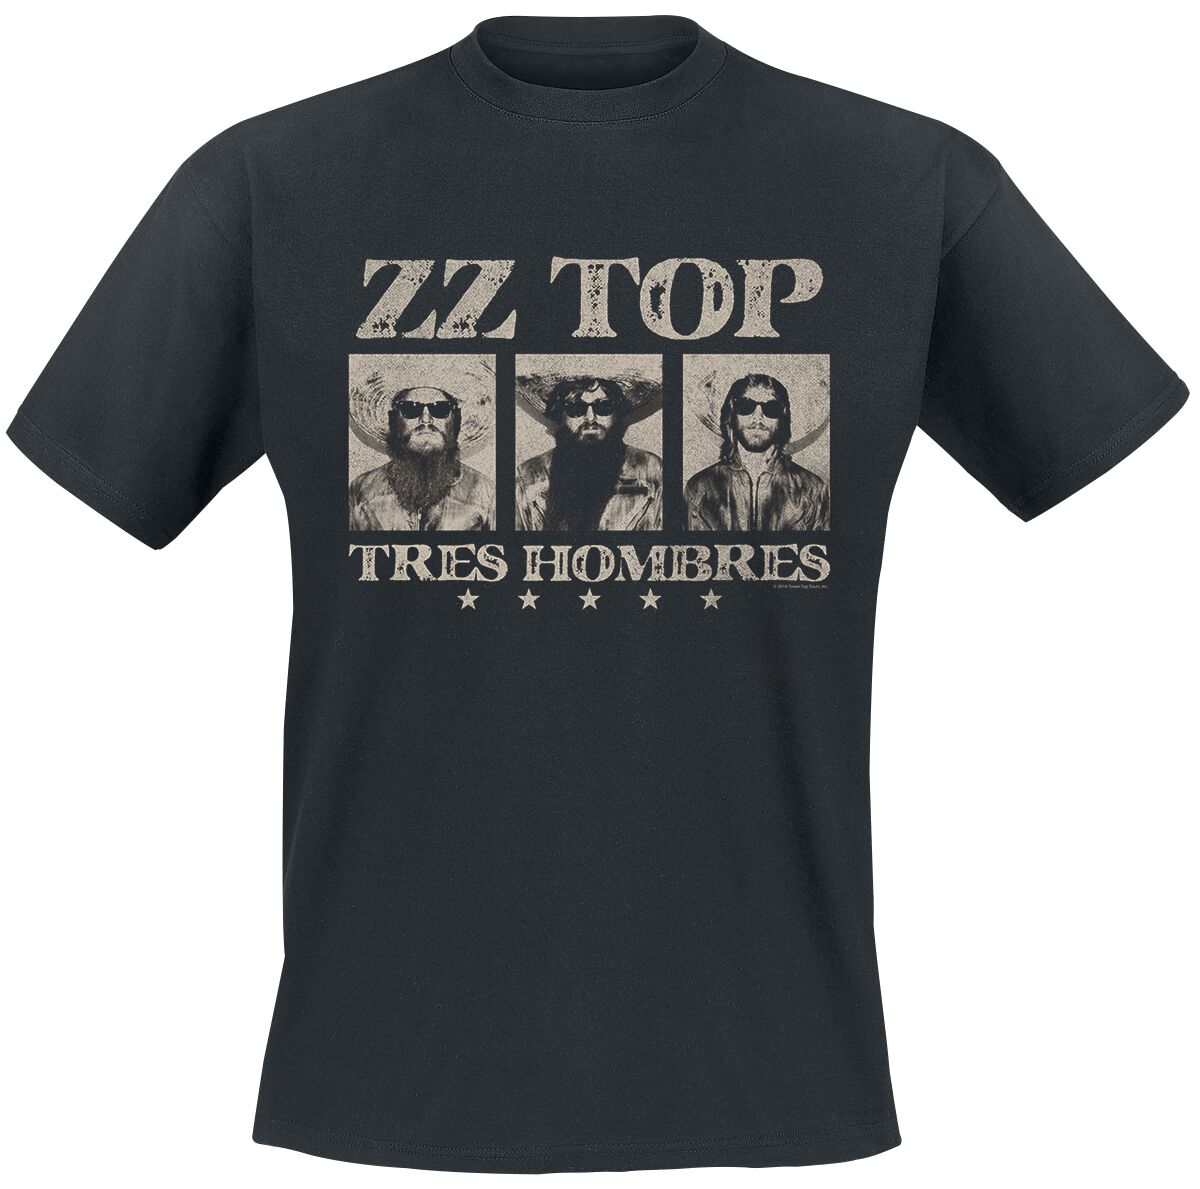 ZZ Top T-Shirt - Tres hombres - M bis XXL - für Männer - Größe XL - schwarz  - Lizenziertes Merchandise!